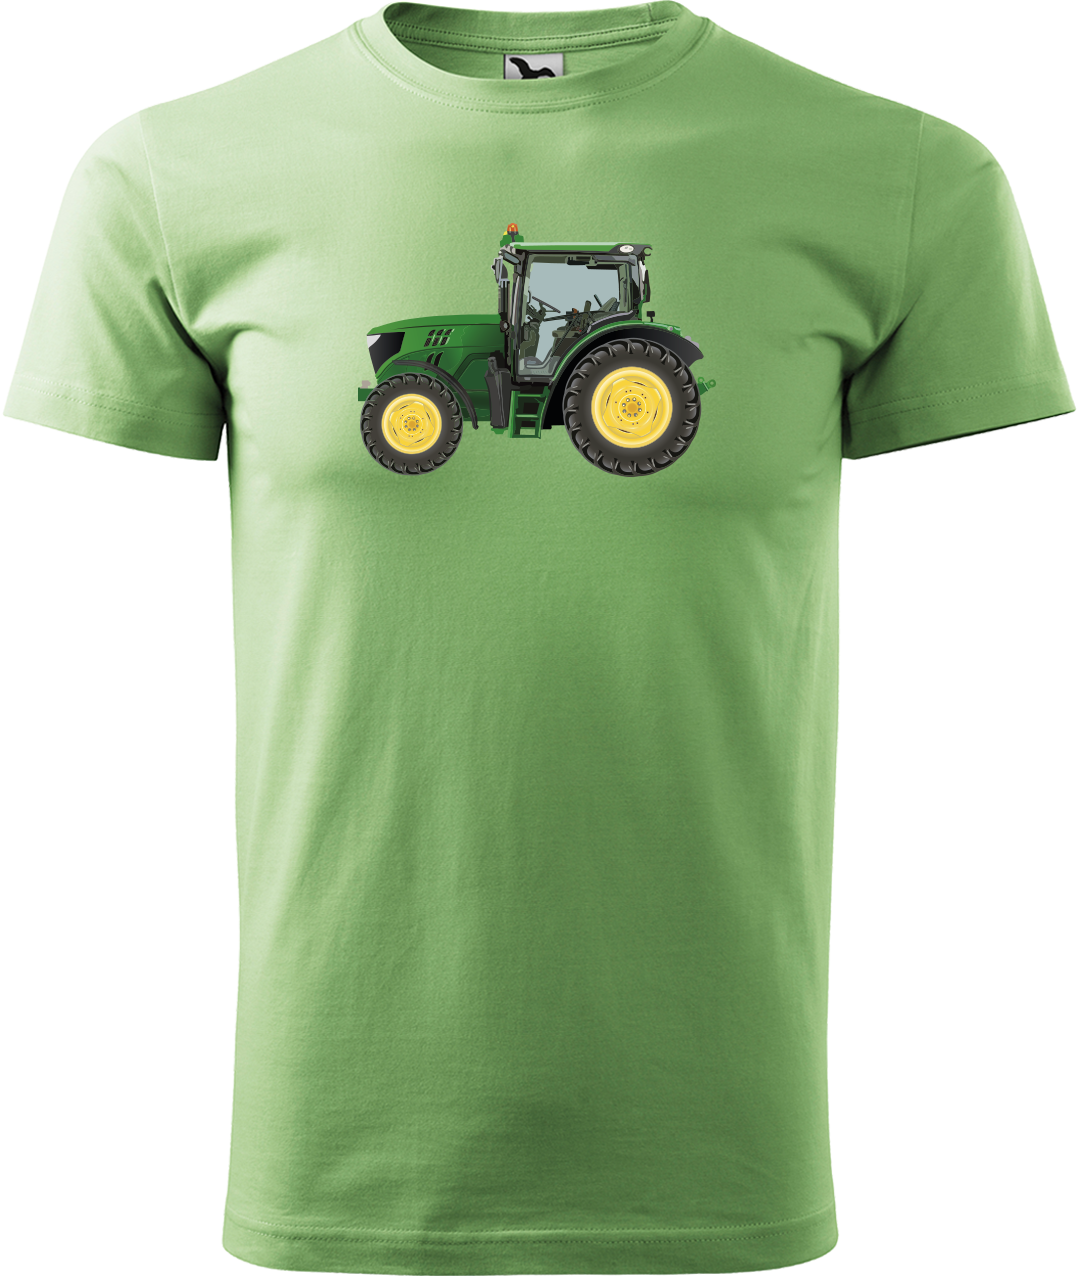 Tričko s traktorem - Zelený traktor Velikost: S, Barva: Trávově zelená (39)